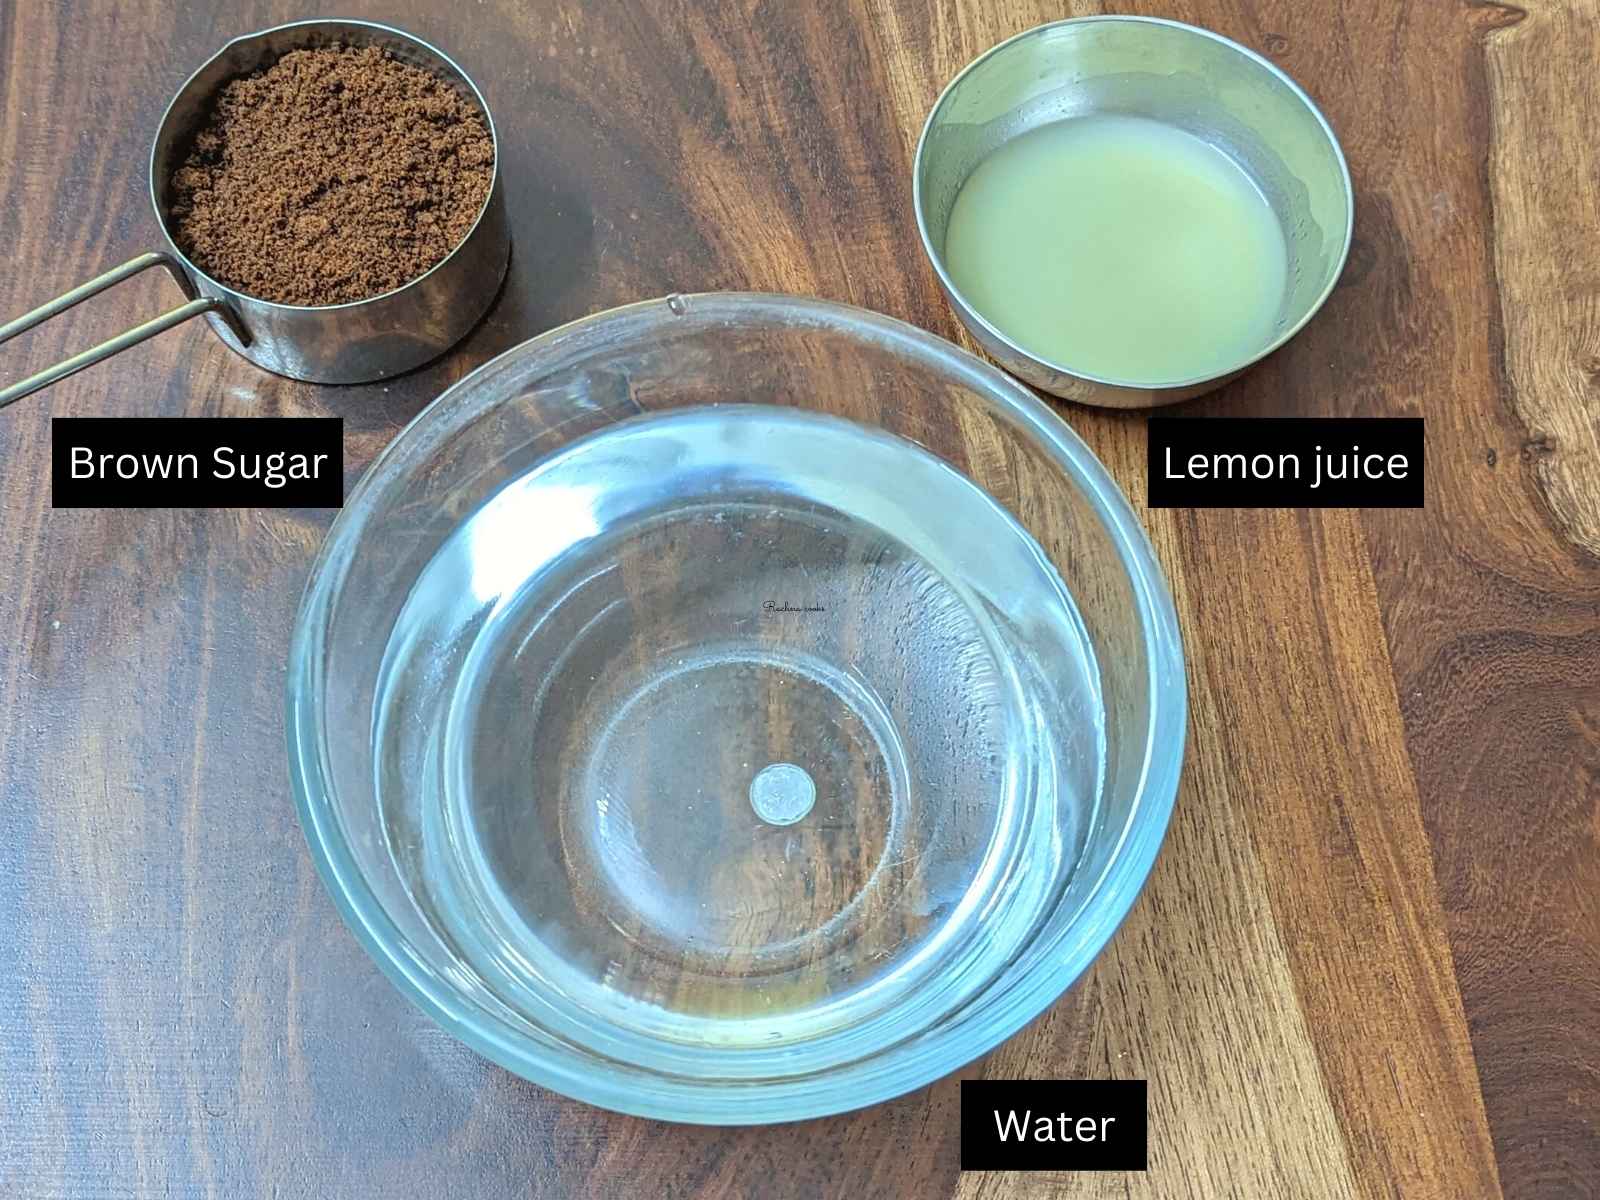 Ingredients for lemonade: brown sugar, lemon juice and water